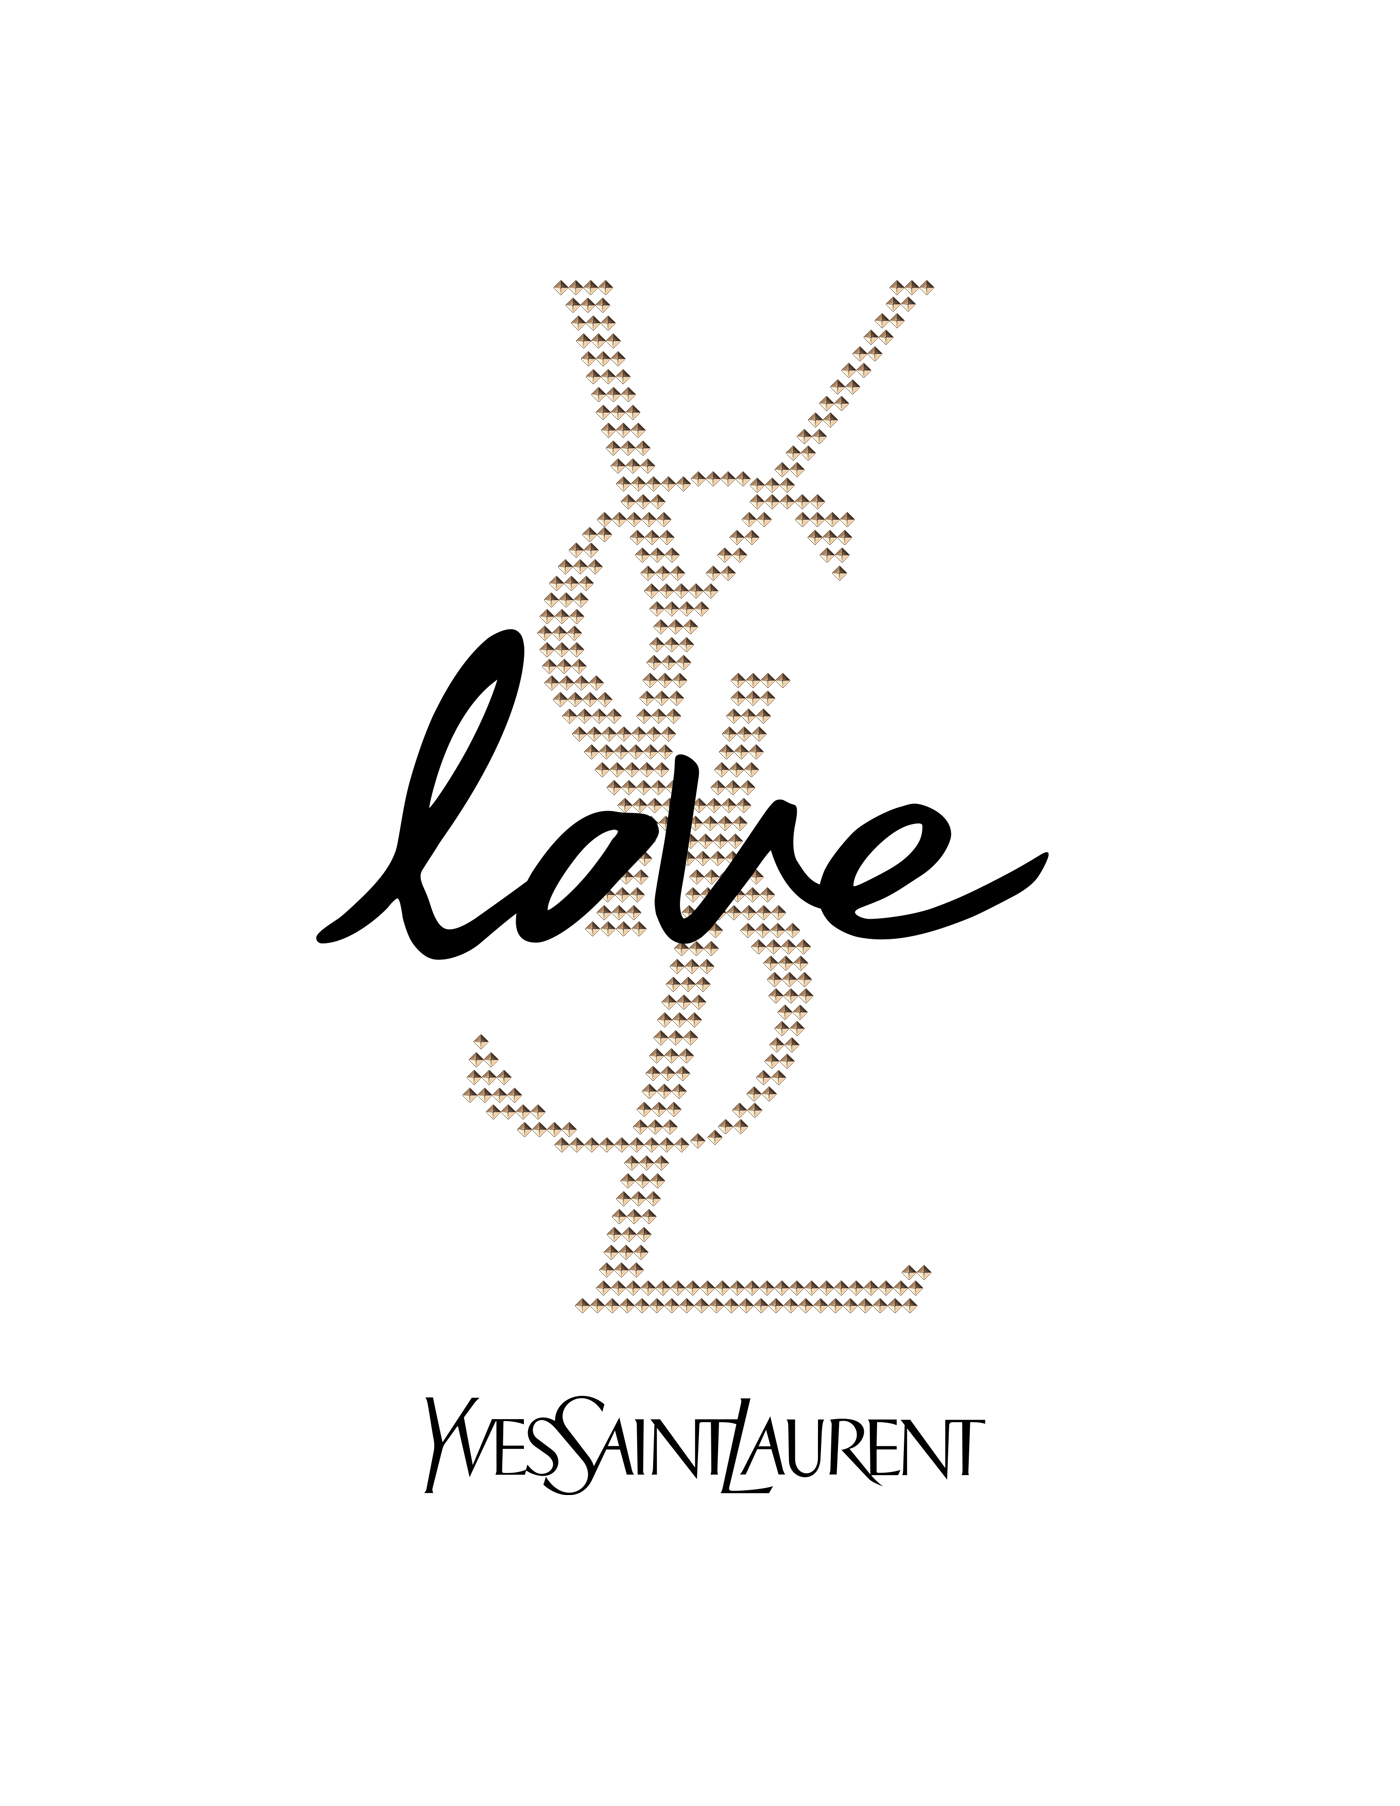 Yves Saint Laurent / YSL Parfums – Love concept artwork